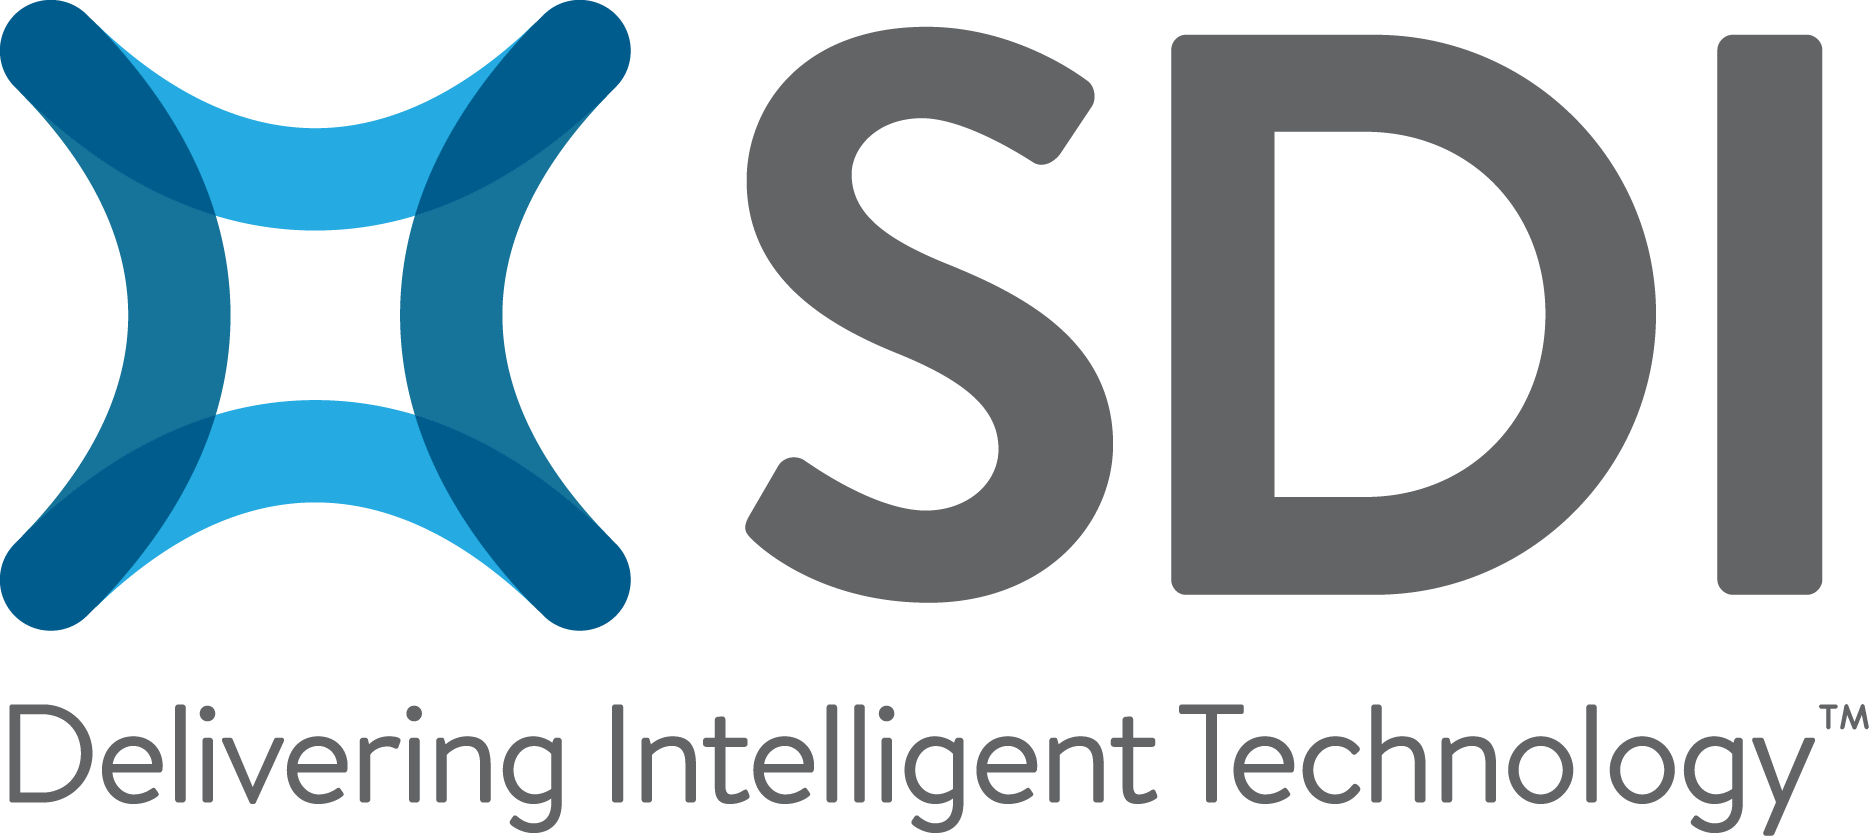 SDI Logo - SDI Official Logo.png